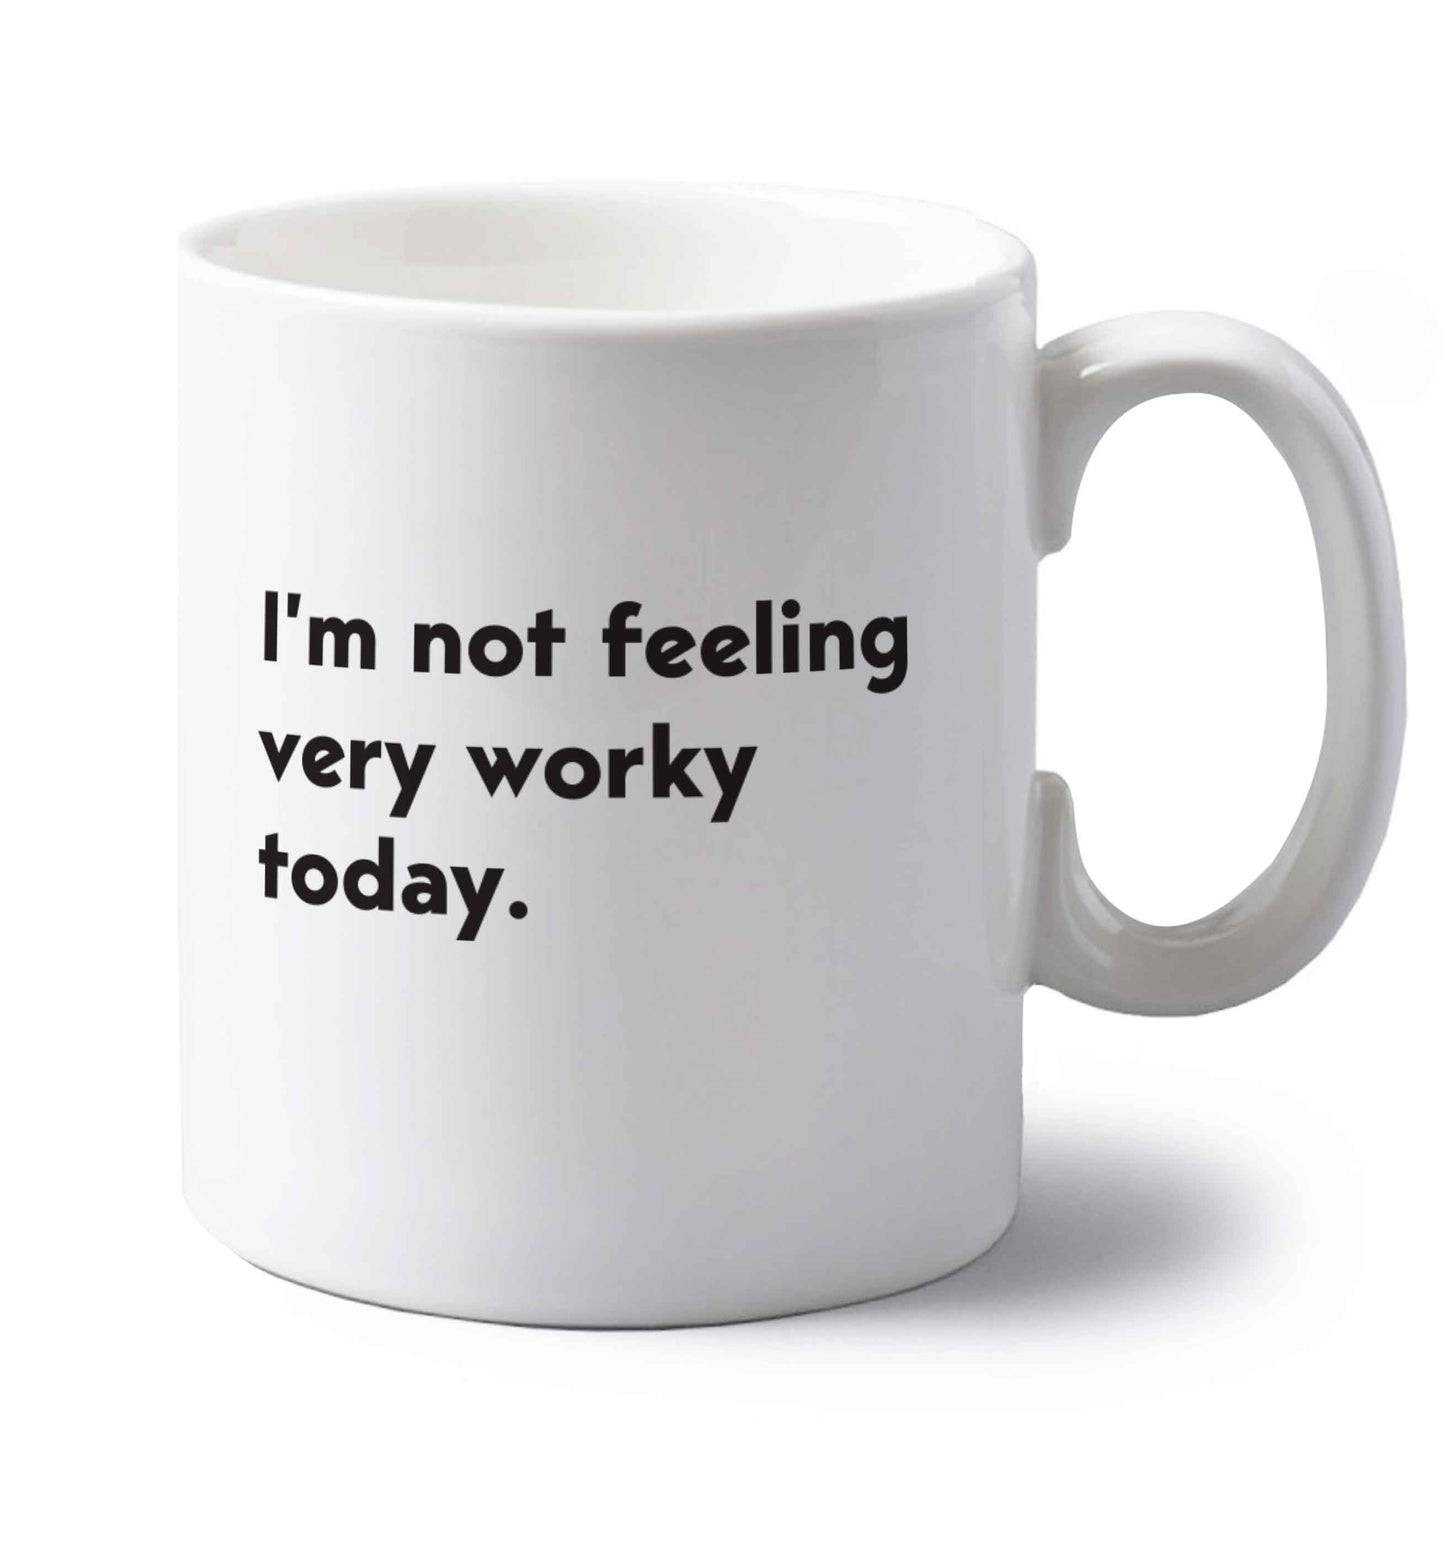 I'm not feeling very worky today left handed white ceramic mug 